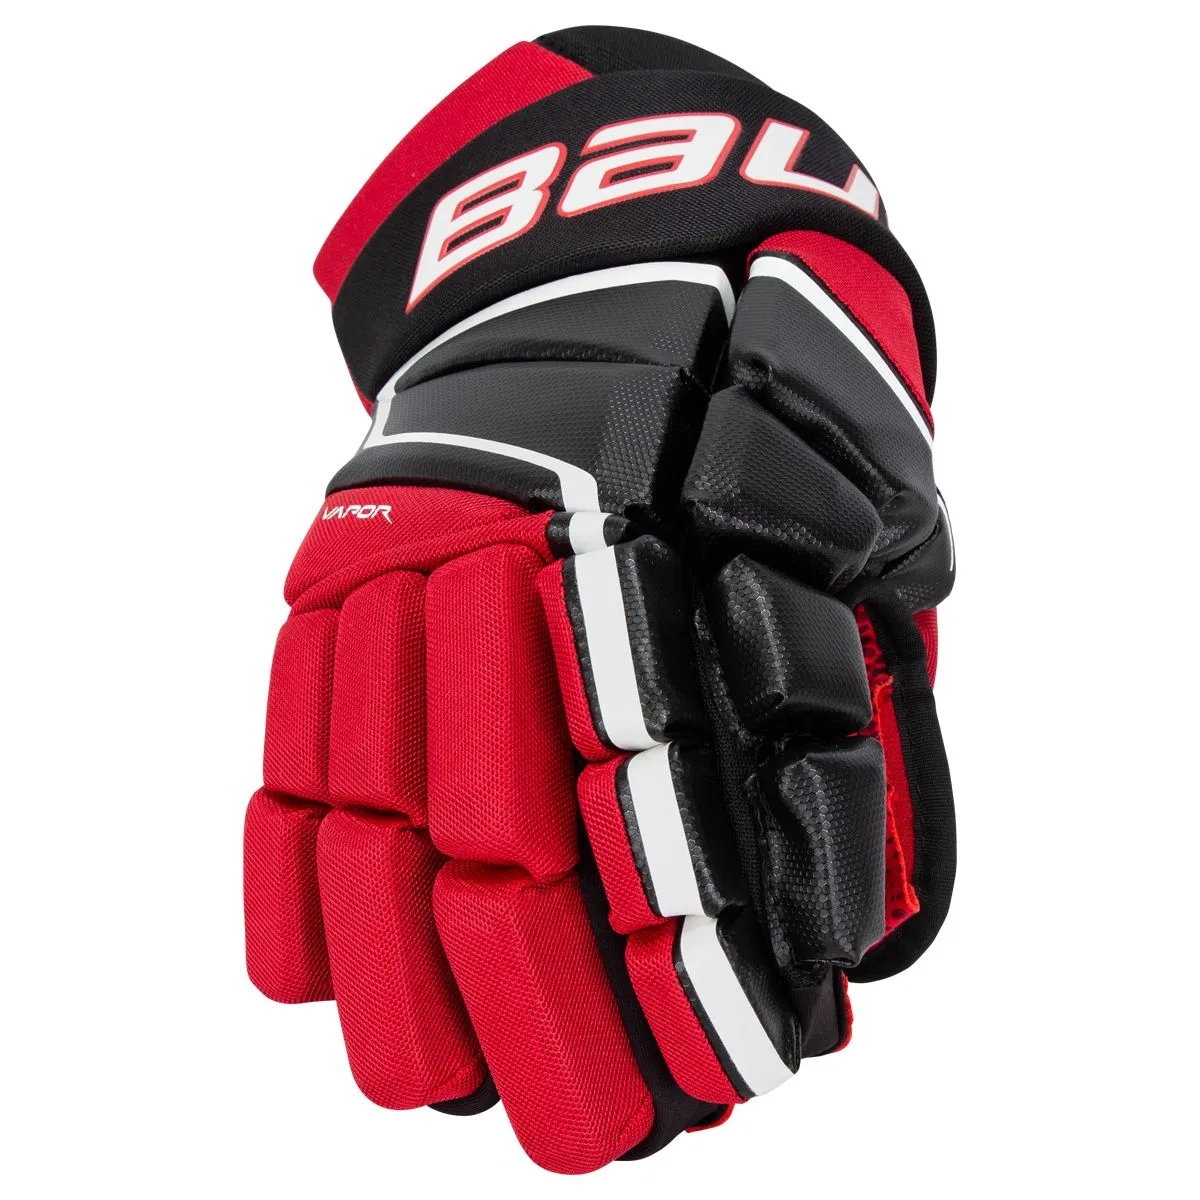 Bauer Vapor 3X Sr. Hockey Gloves